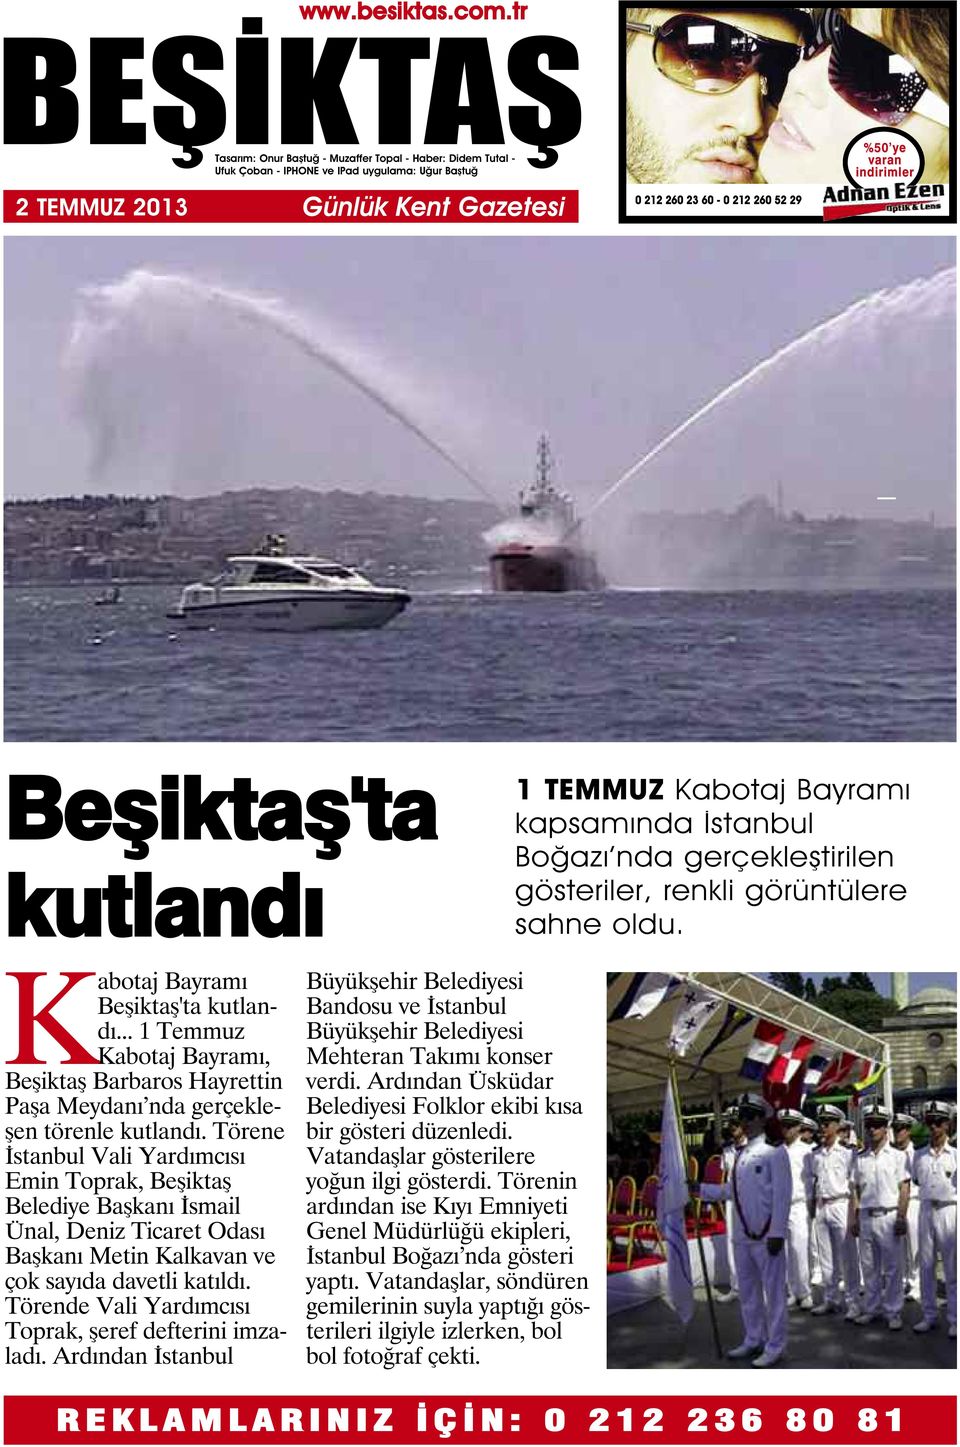 Törene İstanbul Vali Yardımcısı Emin Toprak, Beşiktaş Belediye Başkanı İsmail Ünal, Deniz Ticaret Odası Başkanı Metin Kalkavan ve çok sayıda davetli katıldı.